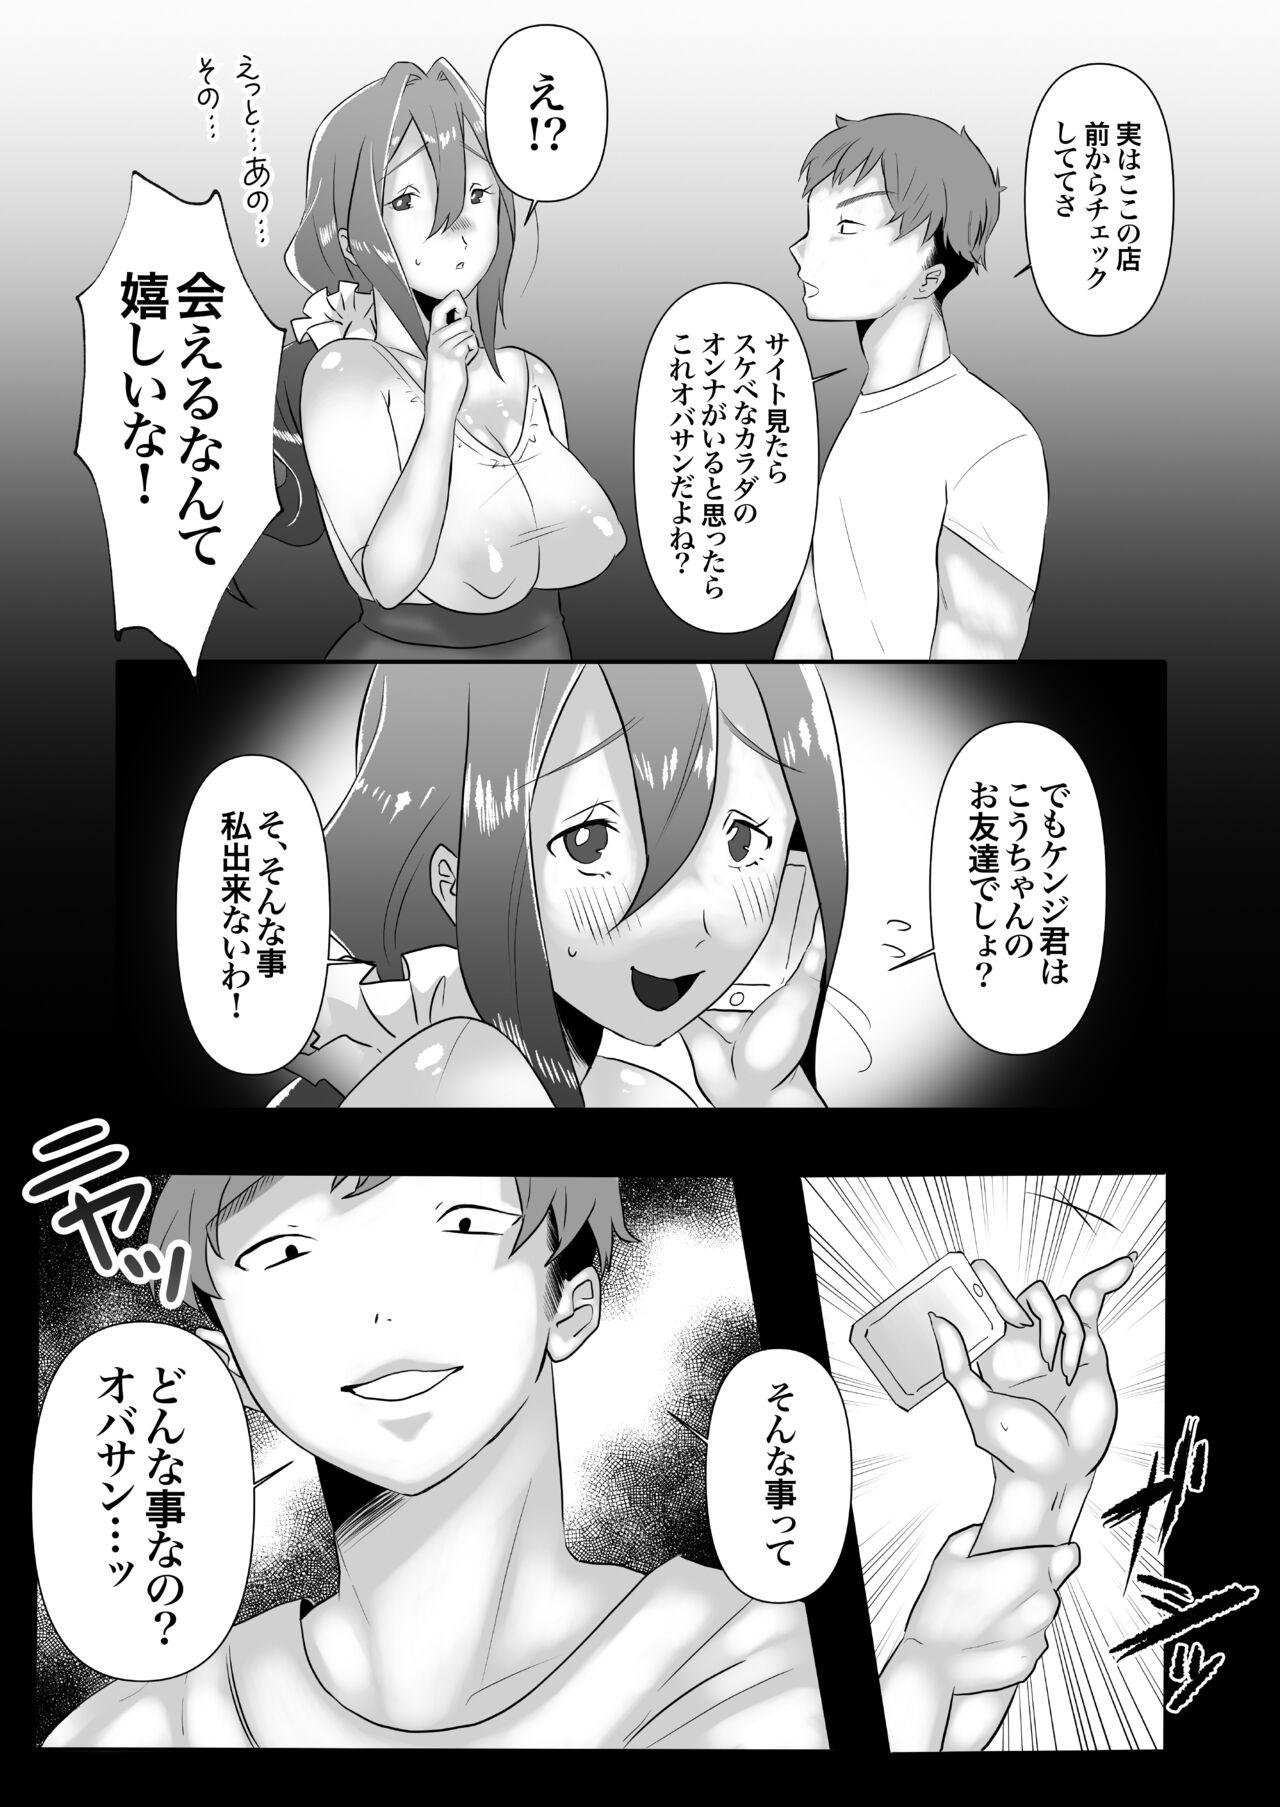 Juicy DeliHeal Yondara Tomodachi no Kaa-chan ga Kita. - Original Hot Blow Jobs - Page 9